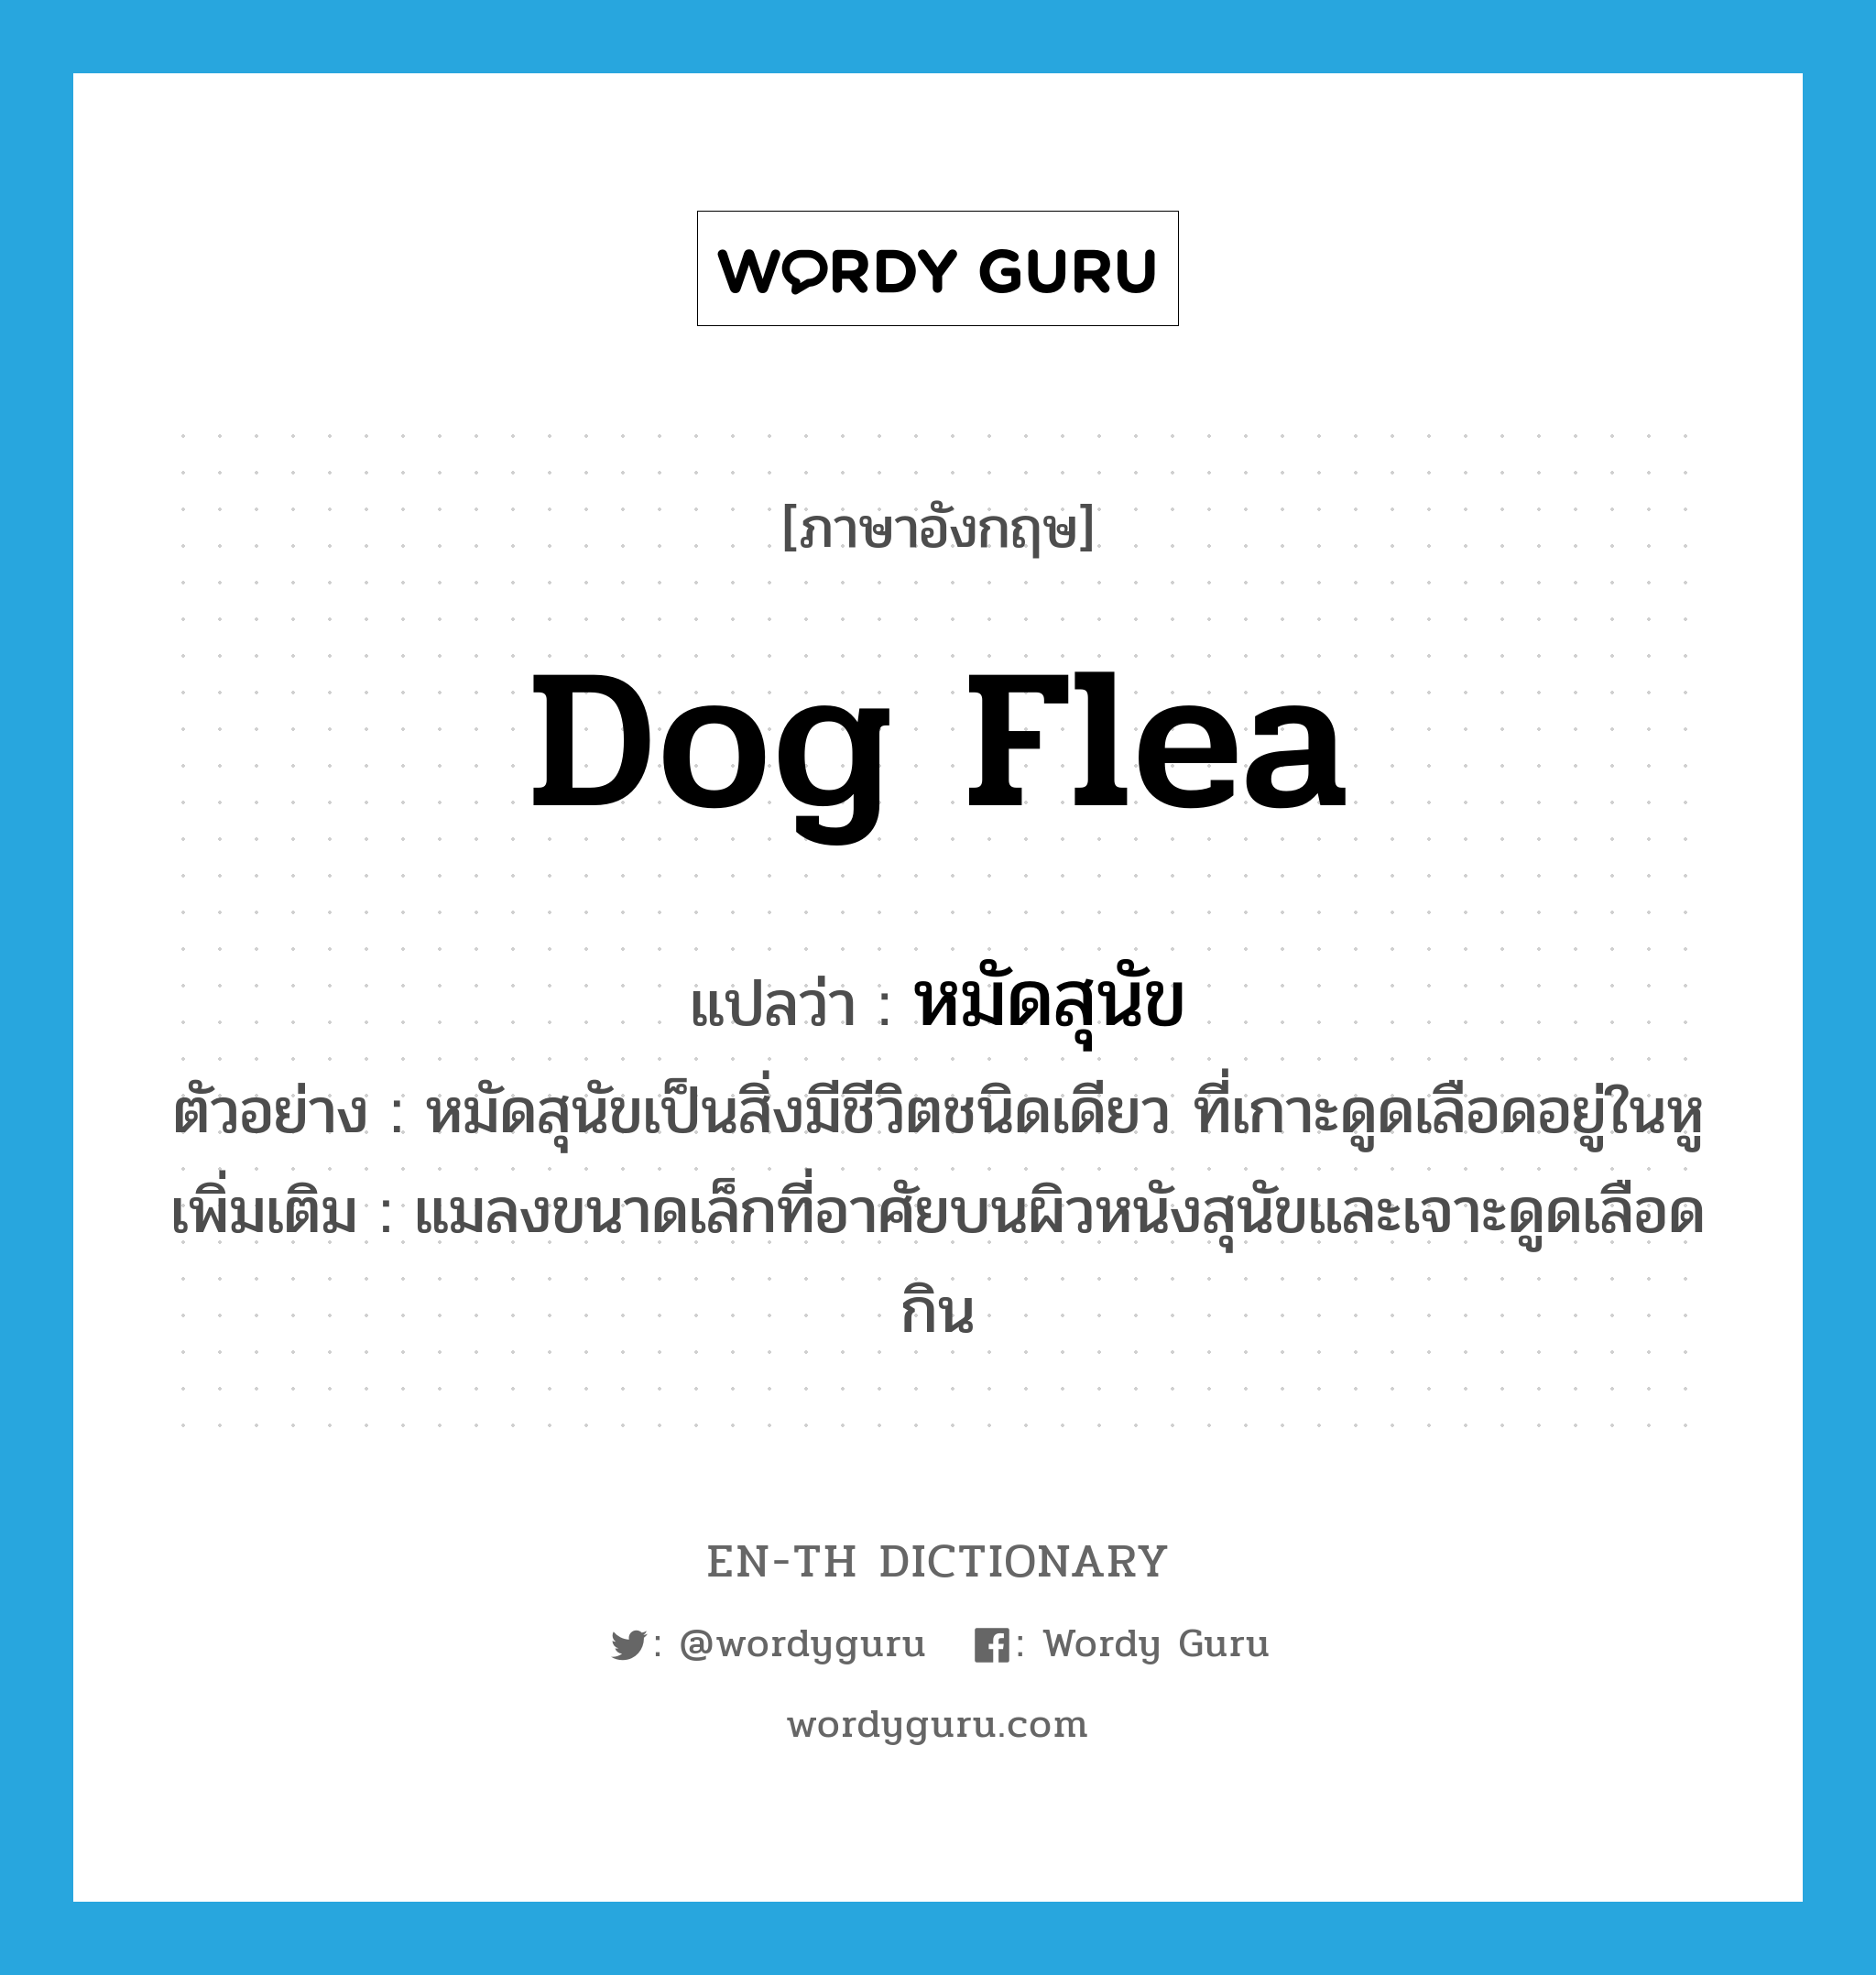 หมัดสุนัข ภาษาอังกฤษ?, คำศัพท์ภาษาอังกฤษ หมัดสุนัข แปลว่า dog flea ประเภท N ตัวอย่าง หมัดสุนัขเป็นสิ่งมีชีวิตชนิดเดียว ที่เกาะดูดเลือดอยู่ในหู เพิ่มเติม แมลงขนาดเล็กที่อาศัยบนผิวหนังสุนัขและเจาะดูดเลือดกิน หมวด N